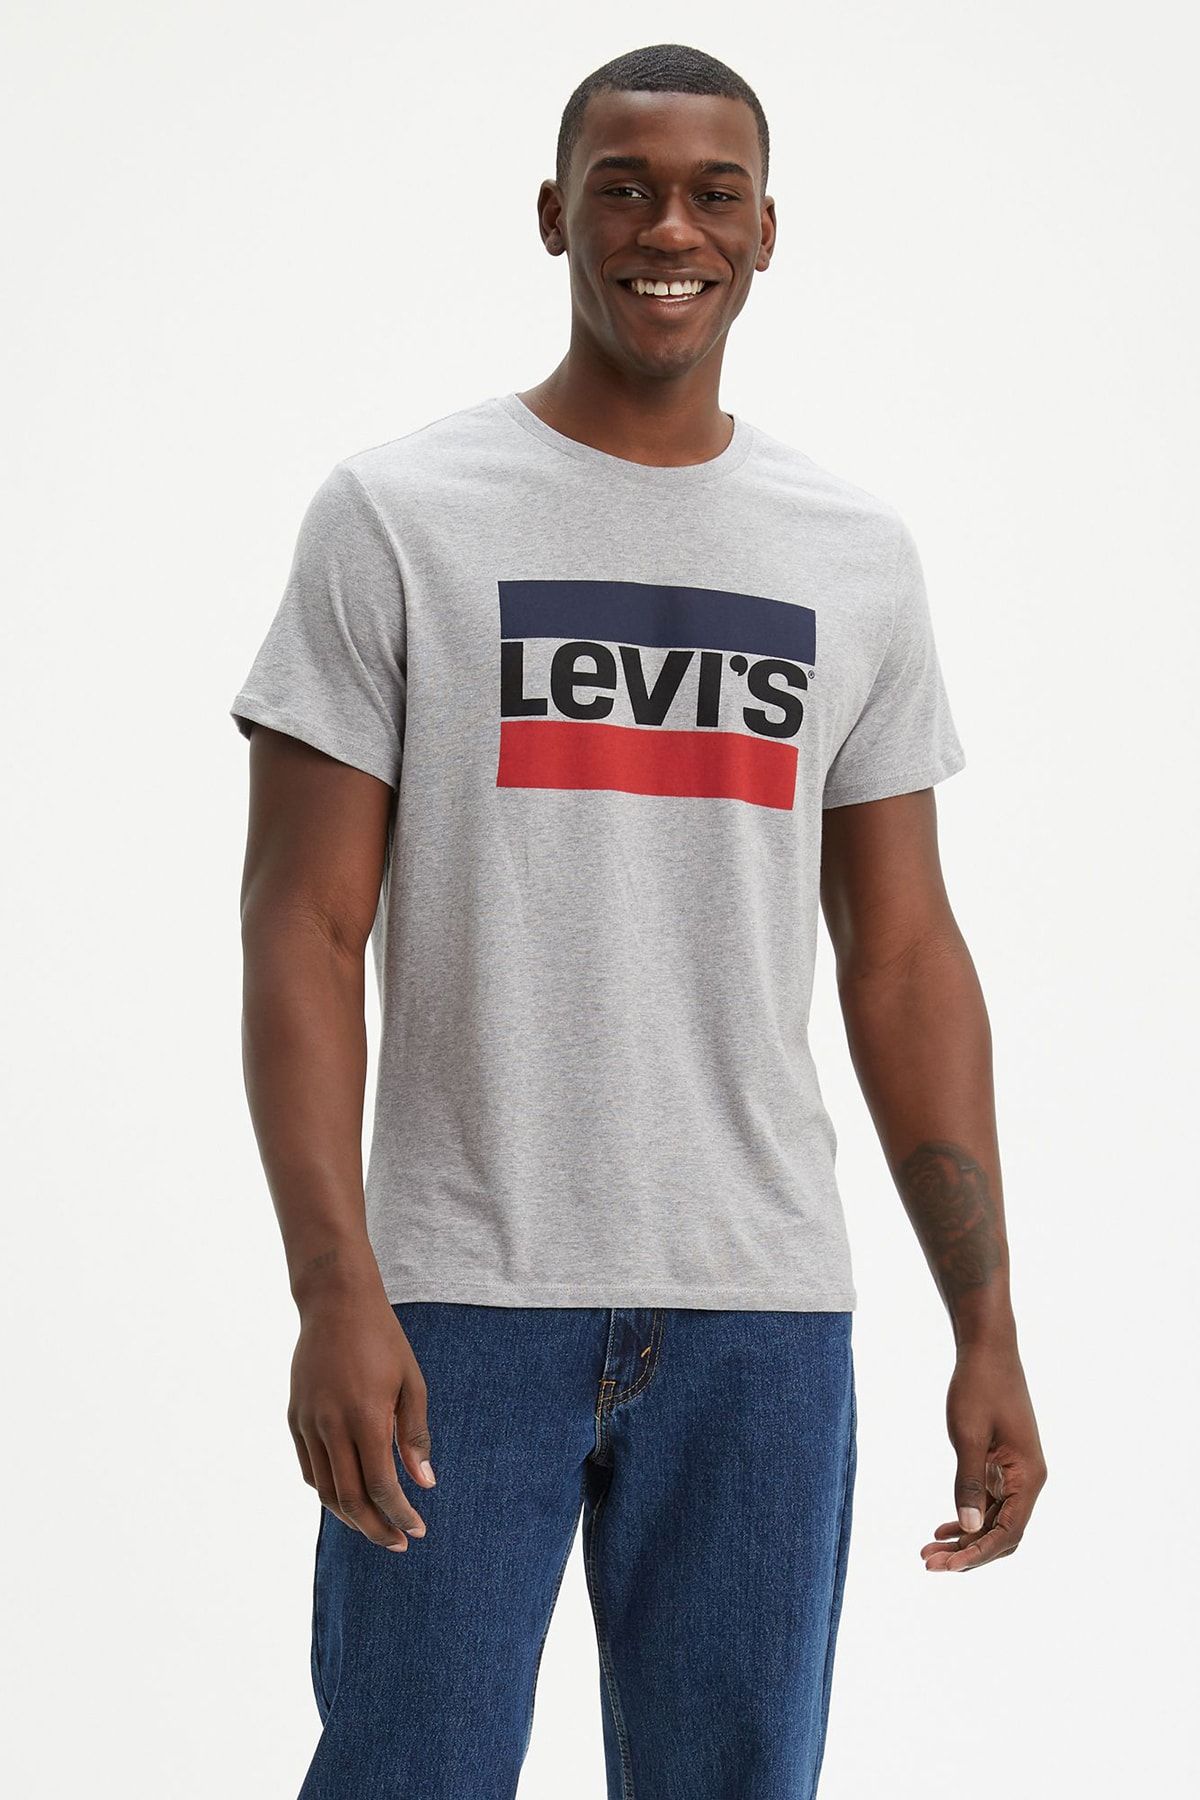 Levi's Erkek T-shirt (39636-0002)